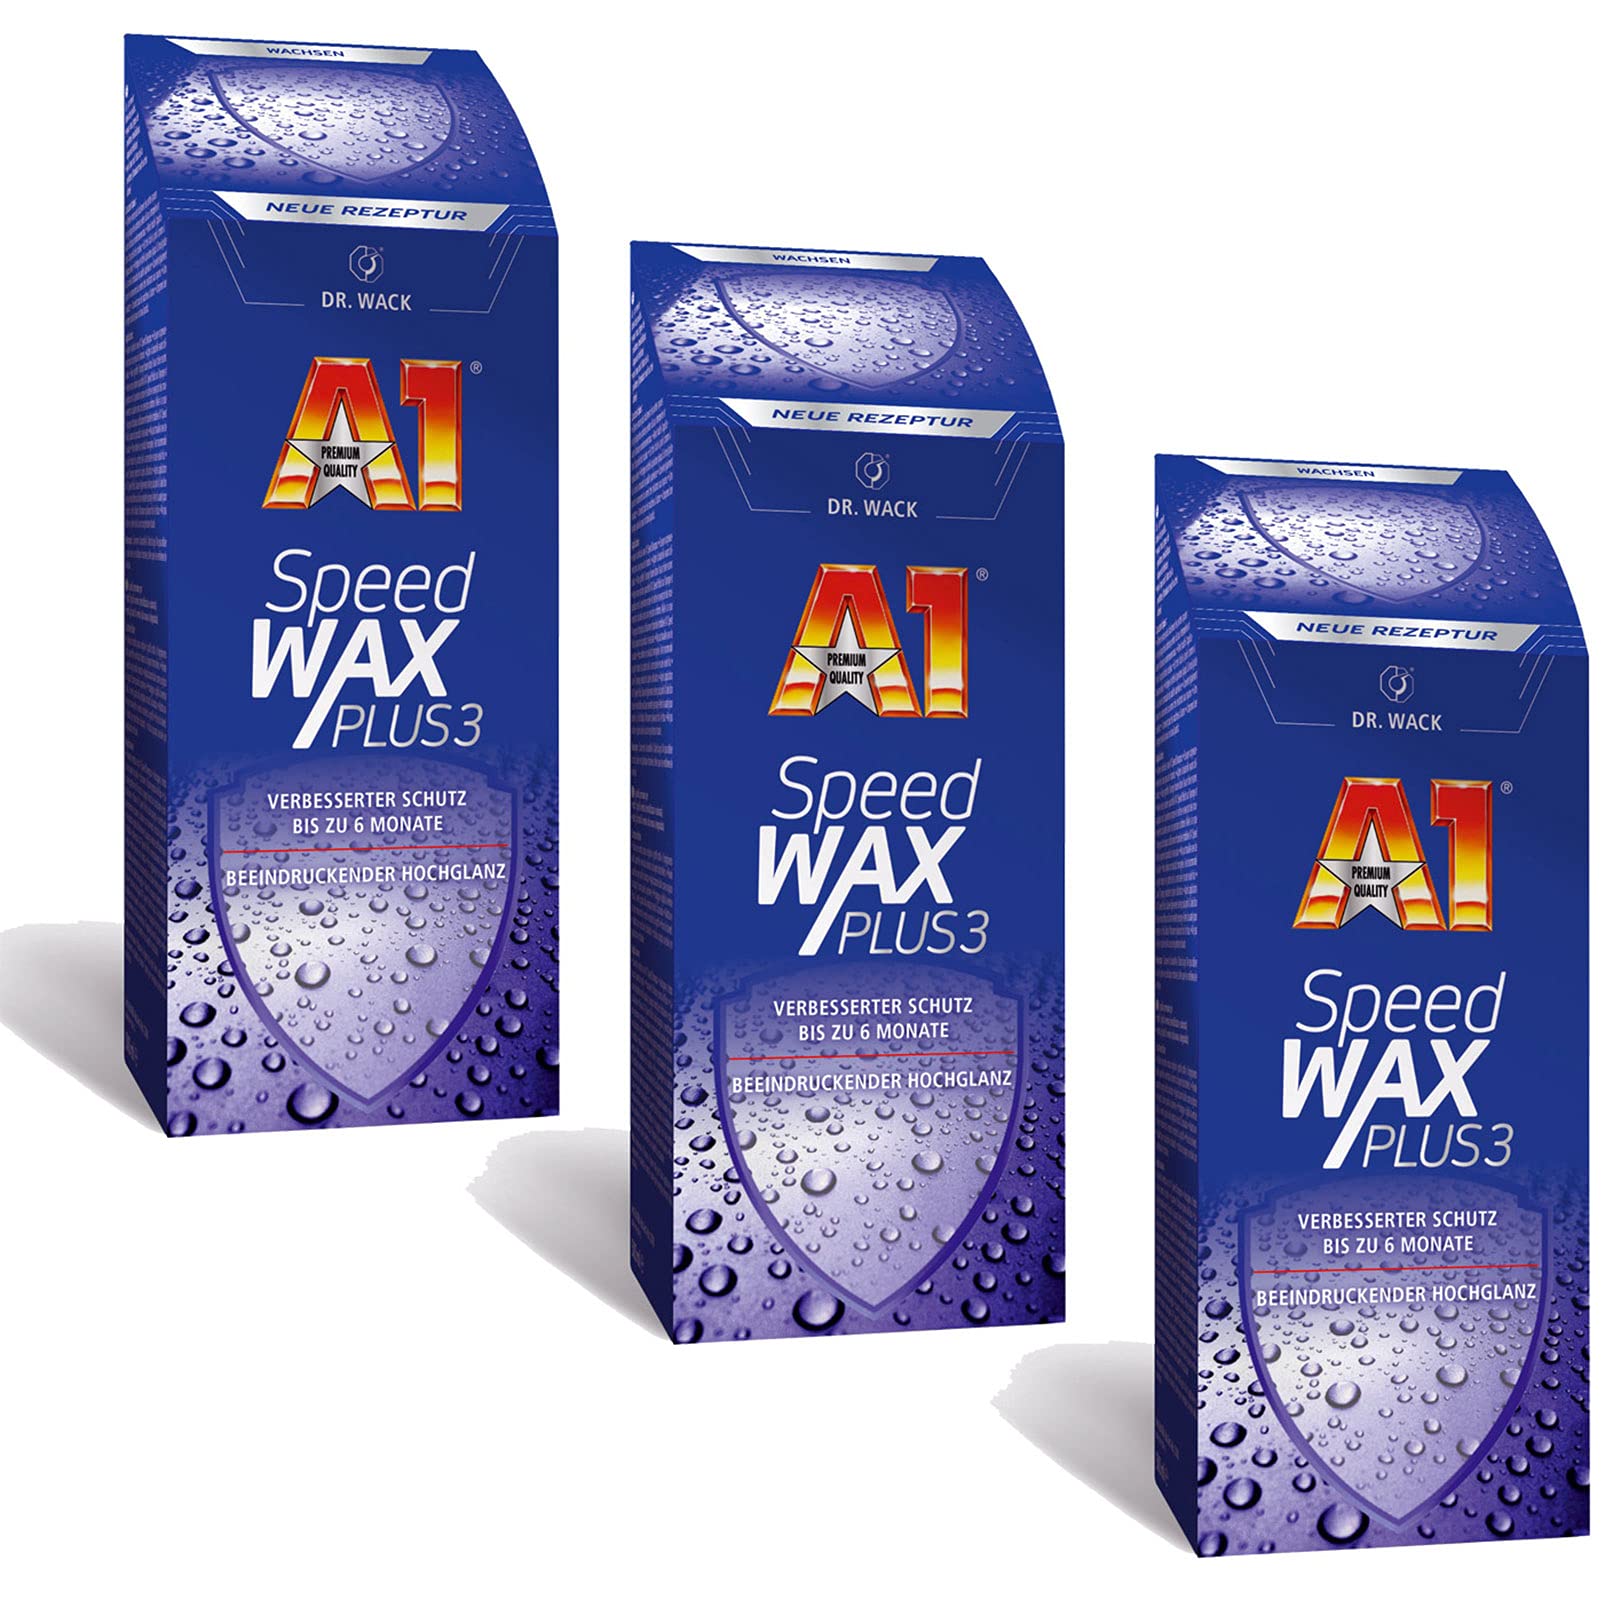 ILODA 3X 500ml Dr. Wack A1 Speed Wax Plus 3, Auto-Hartwachs, Auto-Wachs, Lackschutz, Lackversiegelung, Carnauba-Wachs mit extrem langanhaltenden Wasser-Abperl-Effekt für alle Lacke